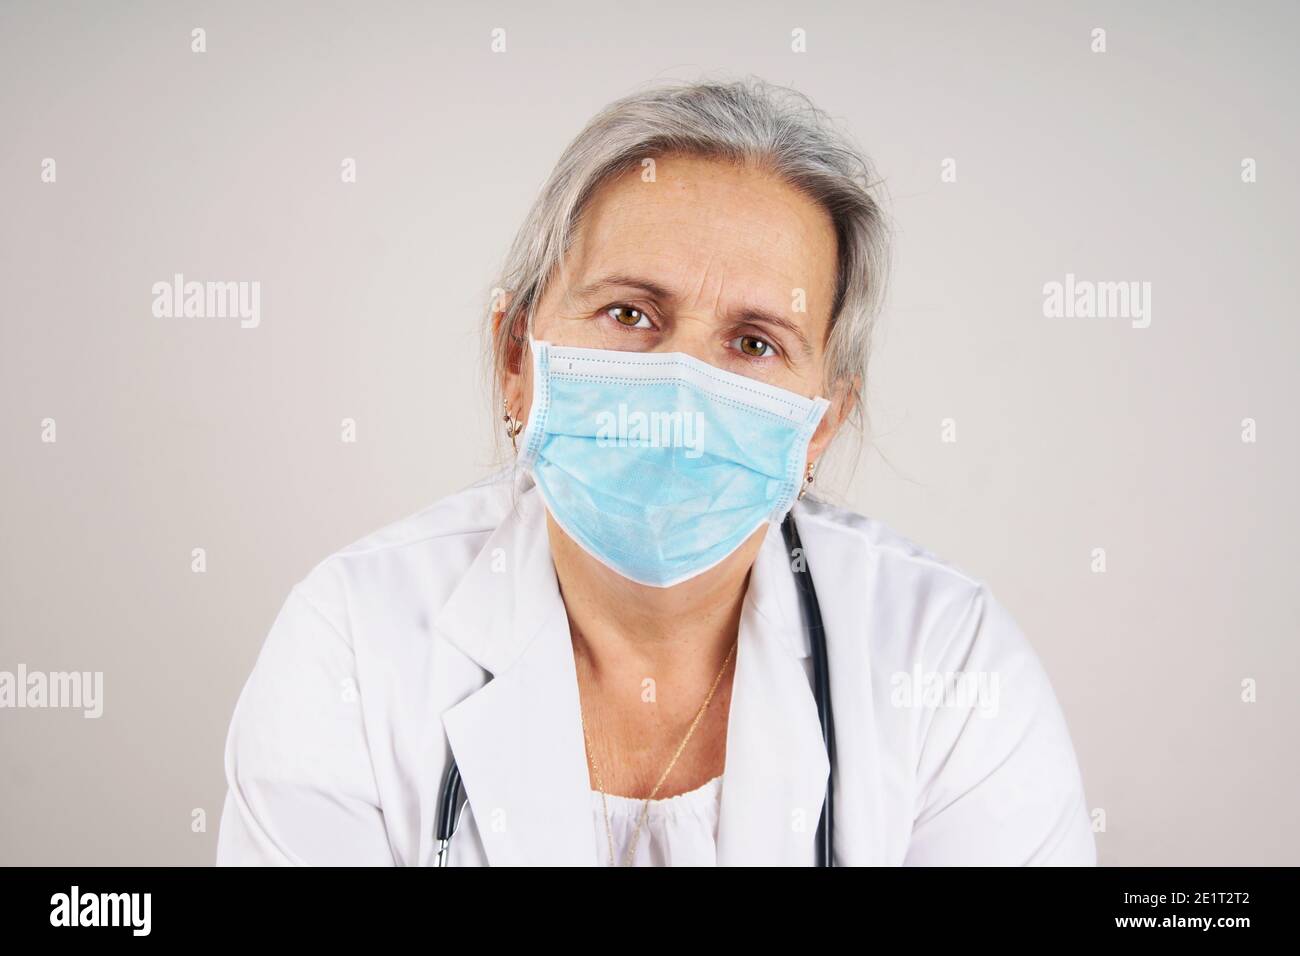 Erschöpft müde und überarbeiteten Krankenschwester oder Arzt, COVID-19 Konzept Stockfoto